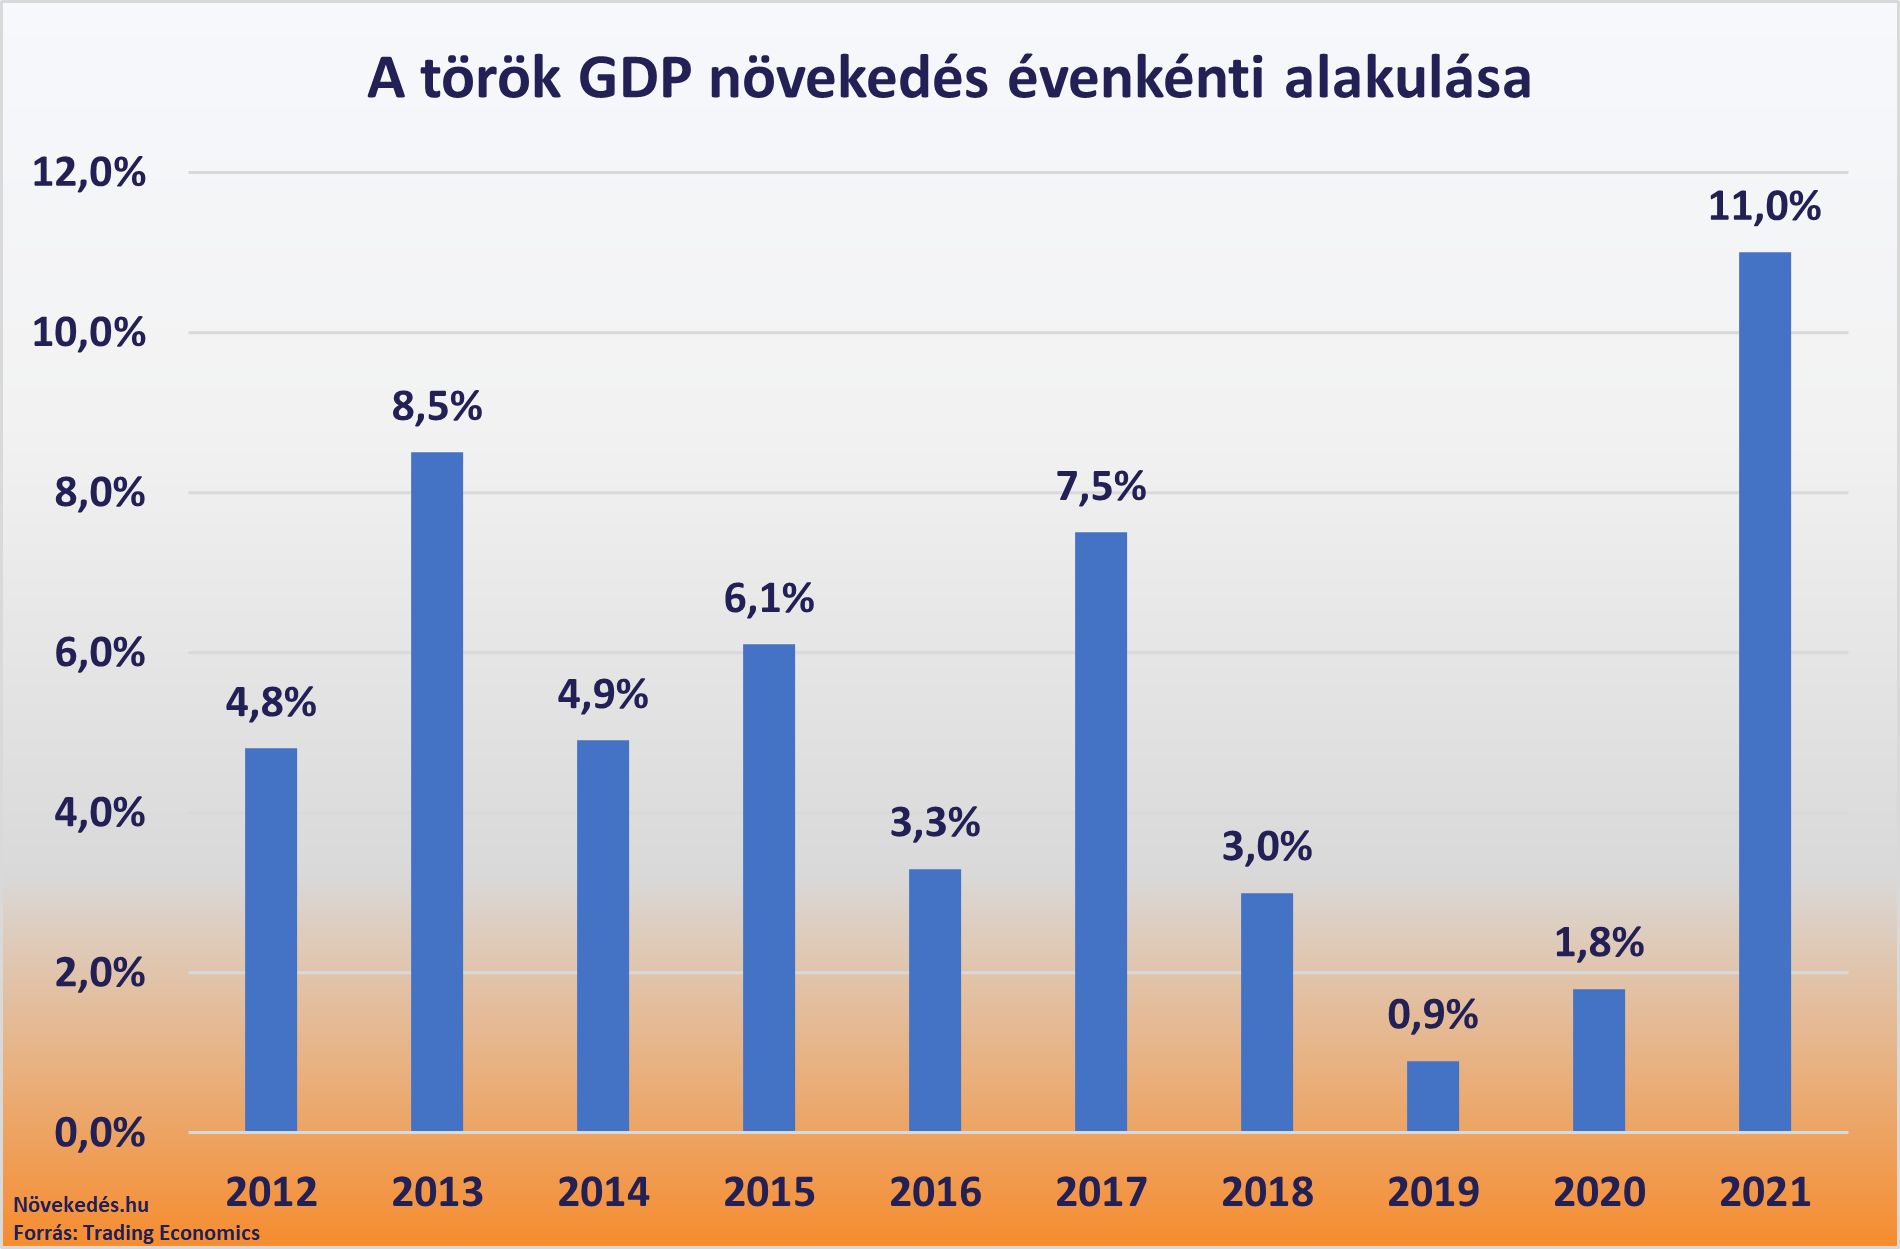 Tavaly, 2021-ben pedig gyorsan helyreállt a török gazdaság és egyetlen év alatt 11 százalékos GDP növekedést produkált,